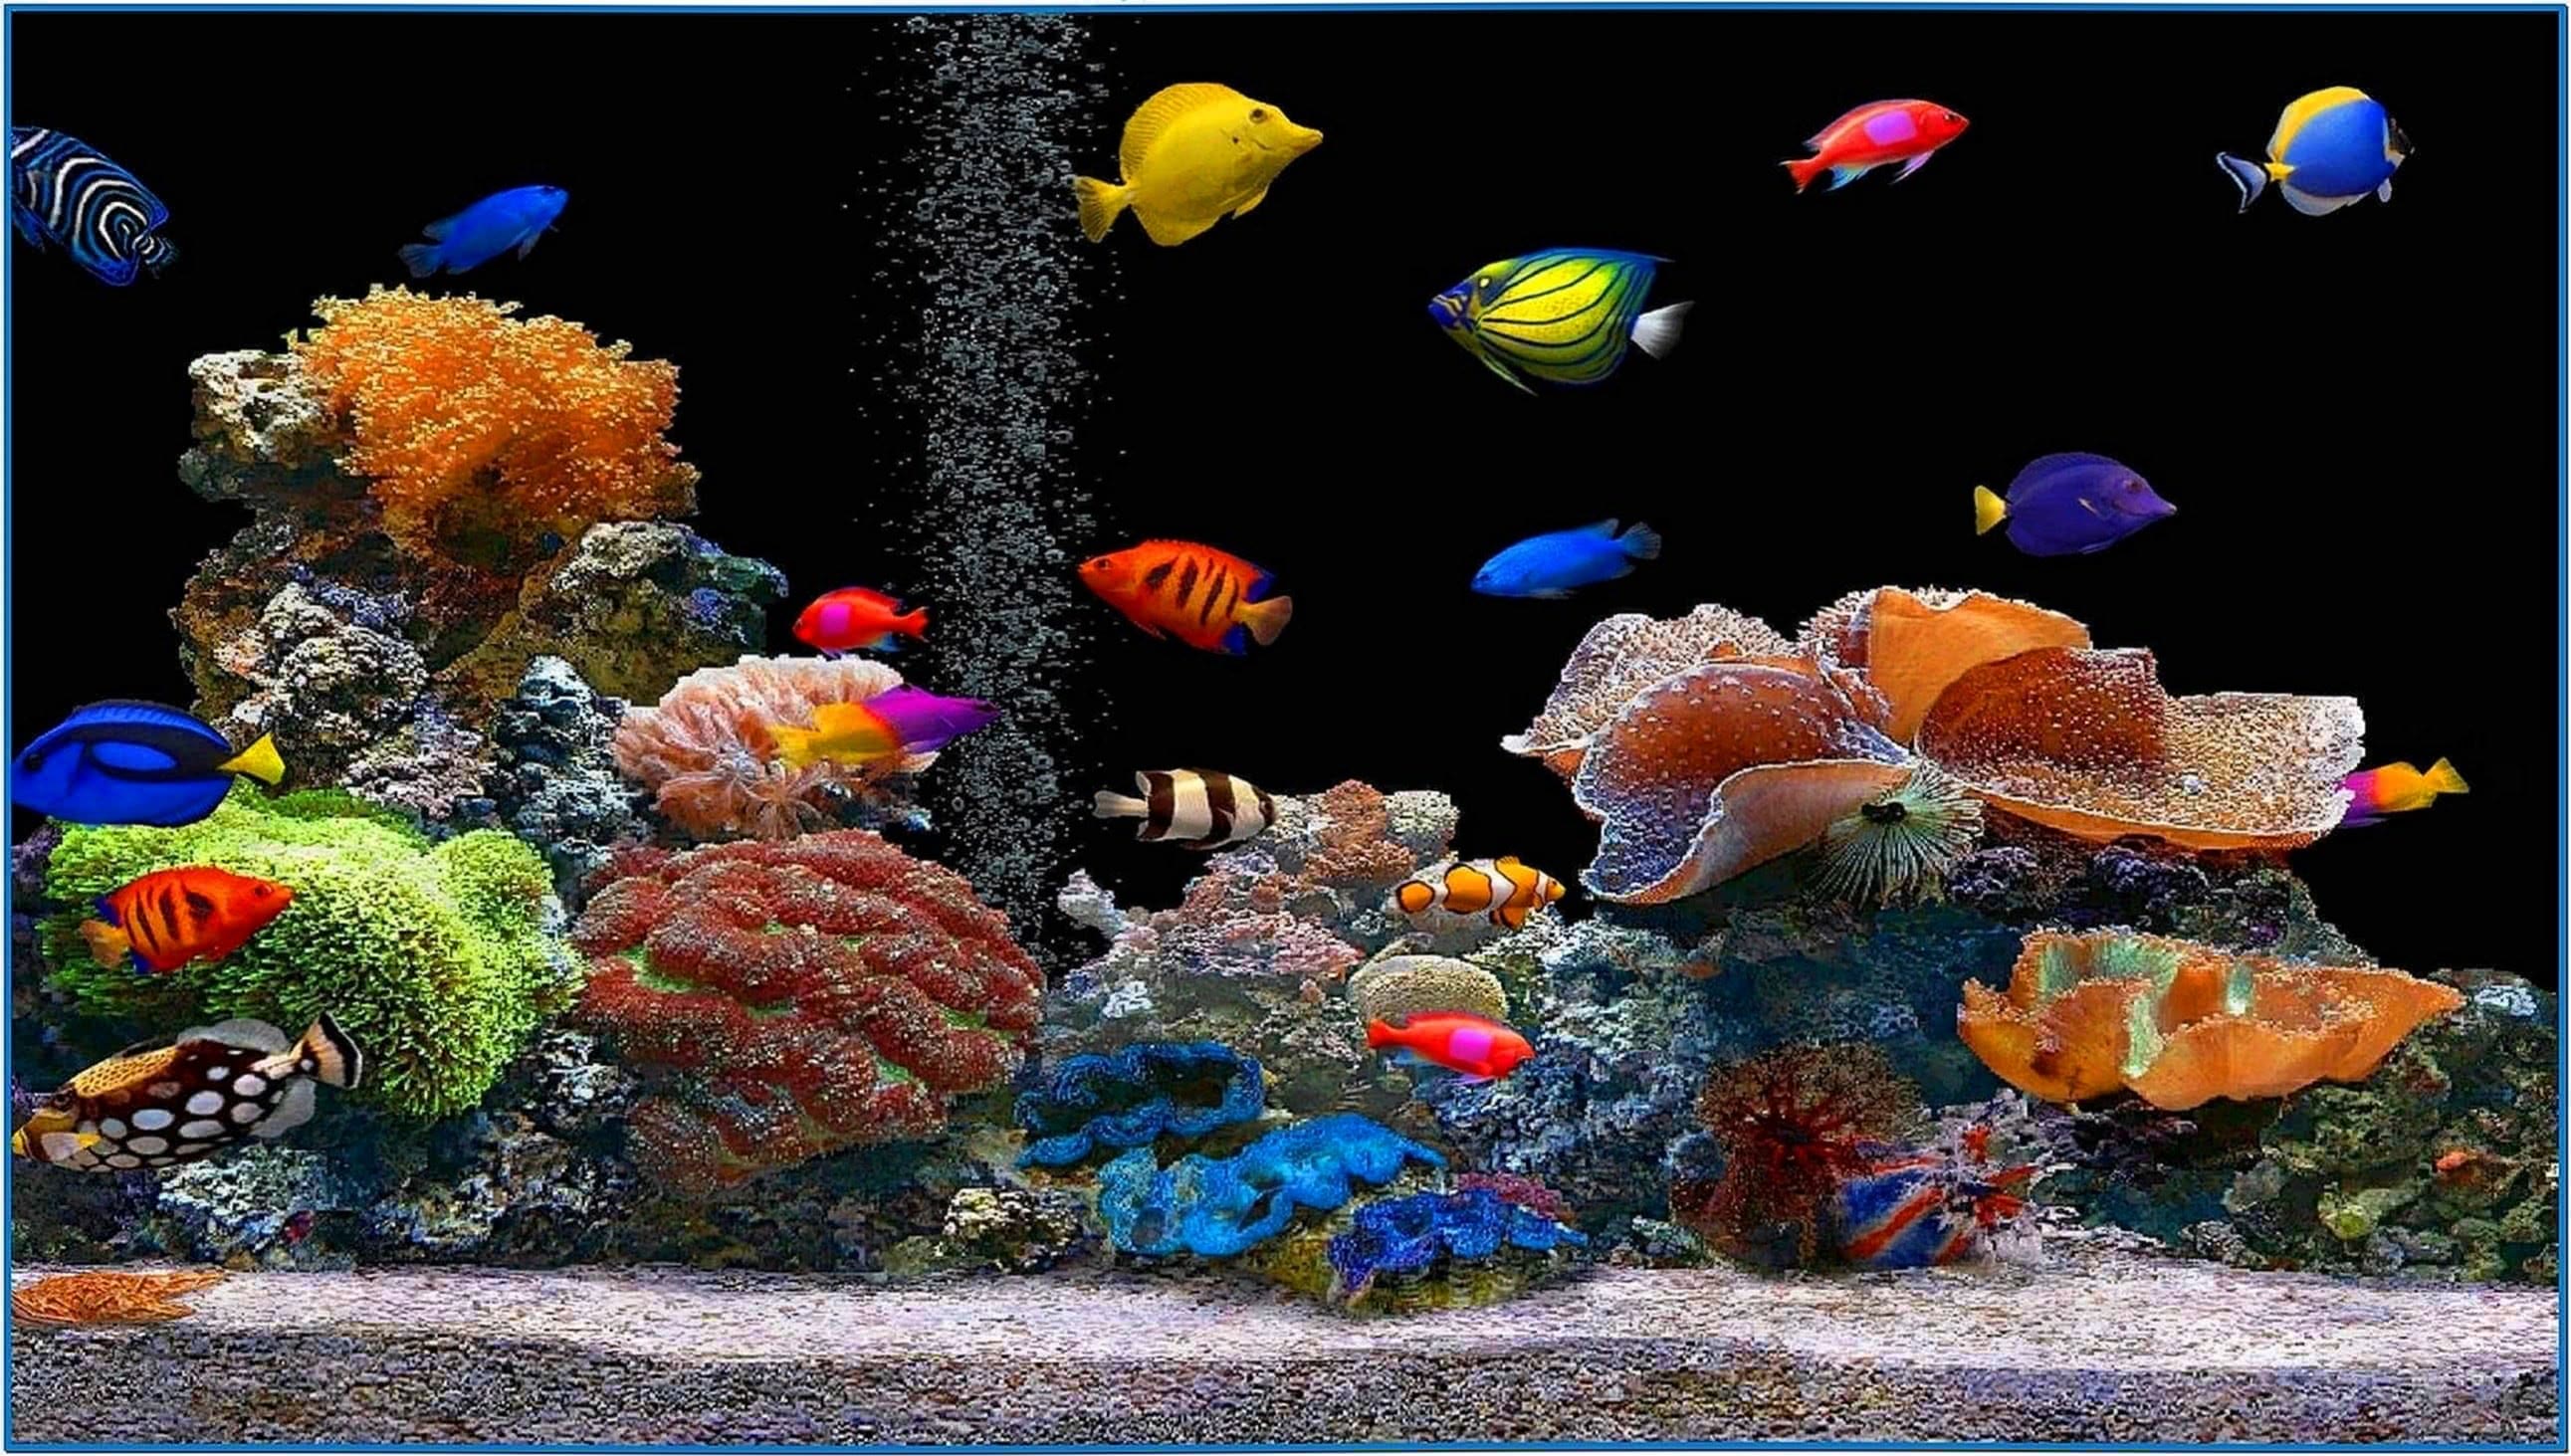 Fish aquarium screensaver for mobile  Download free